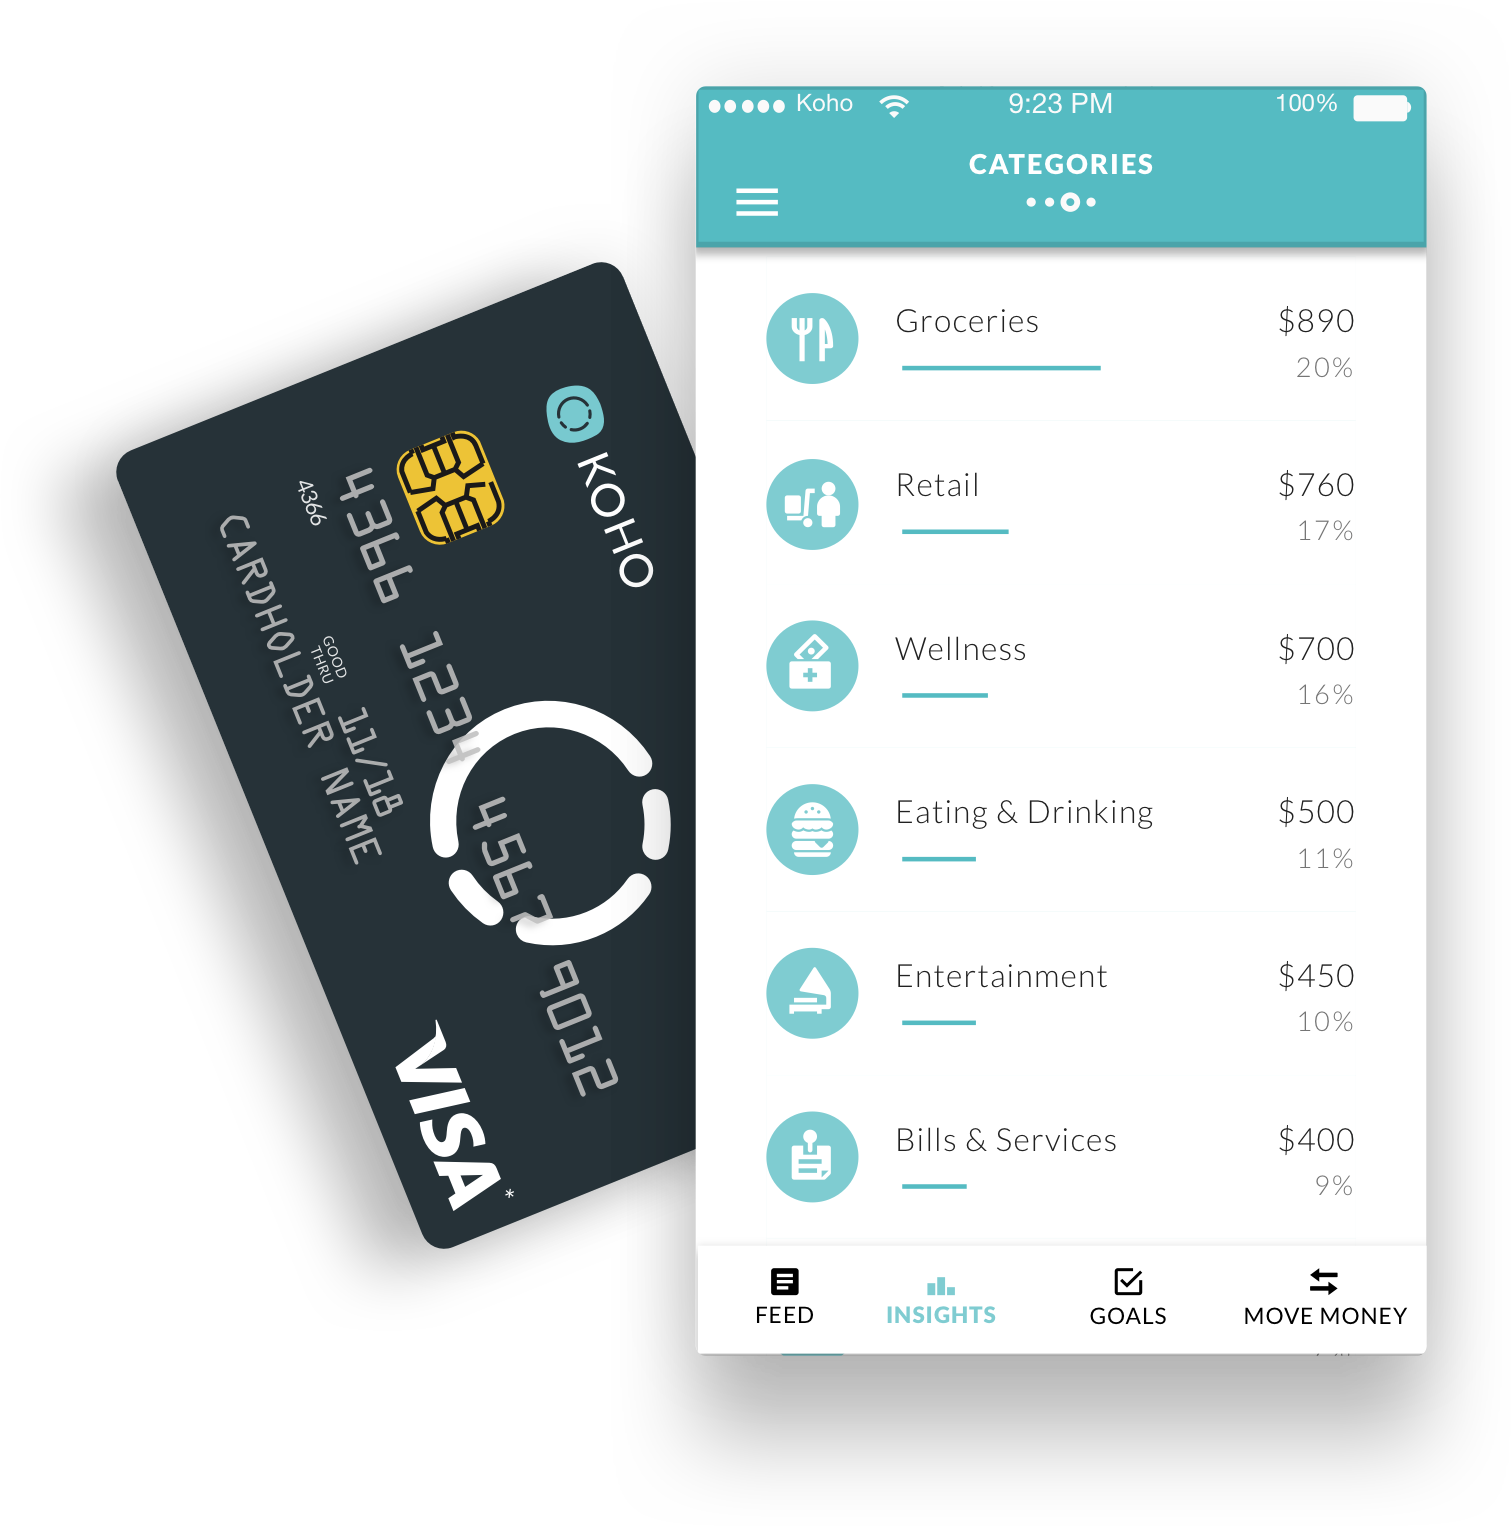 Koho - Card and App